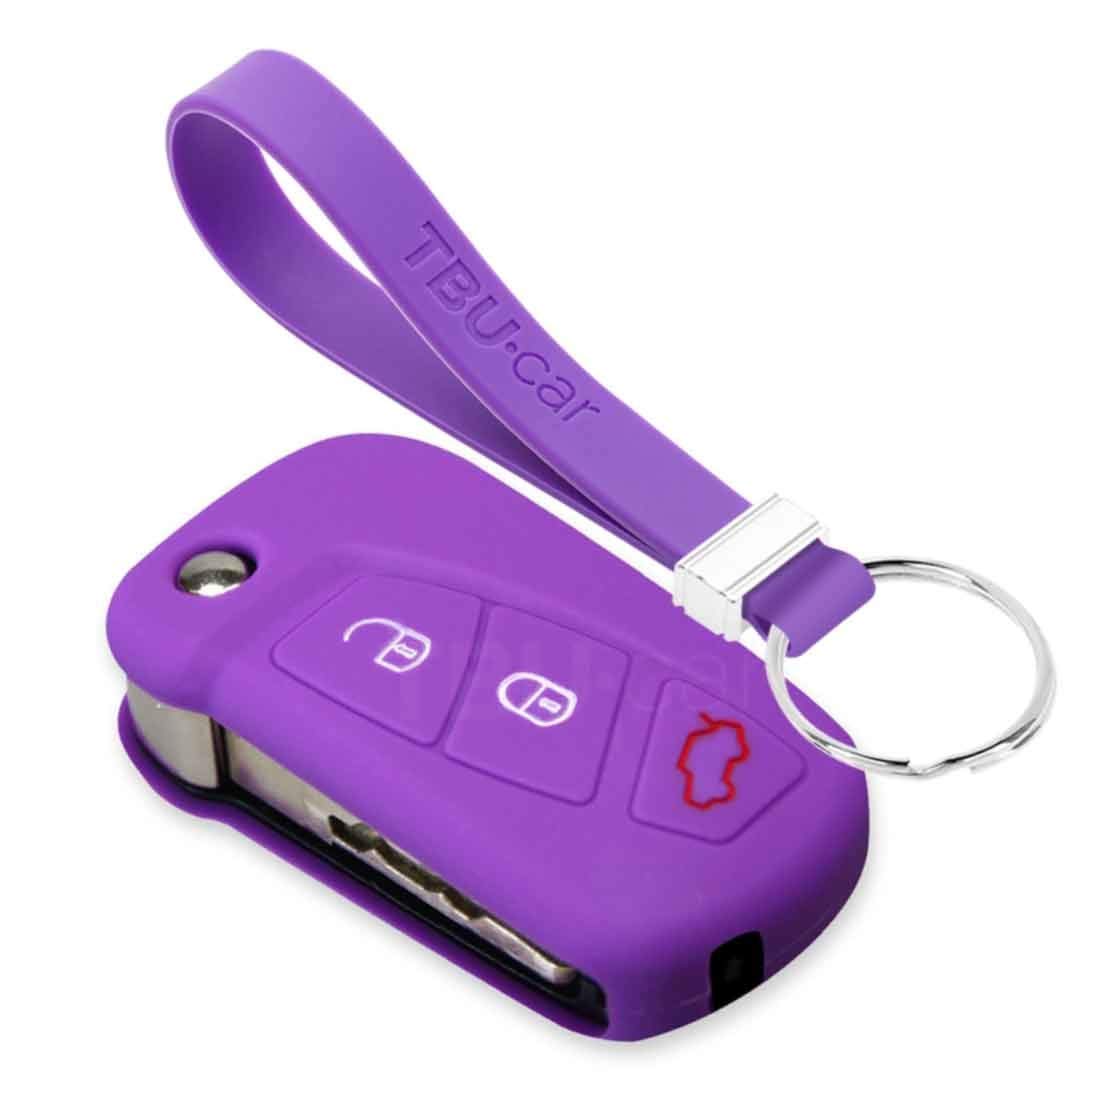 TBU car Autoschlüssel Hülle kompatibel mit Ford 3 Tasten (KA) - Schutzhülle aus Silikon - Auto Schlüsselhülle Cover in Violett von TBU car